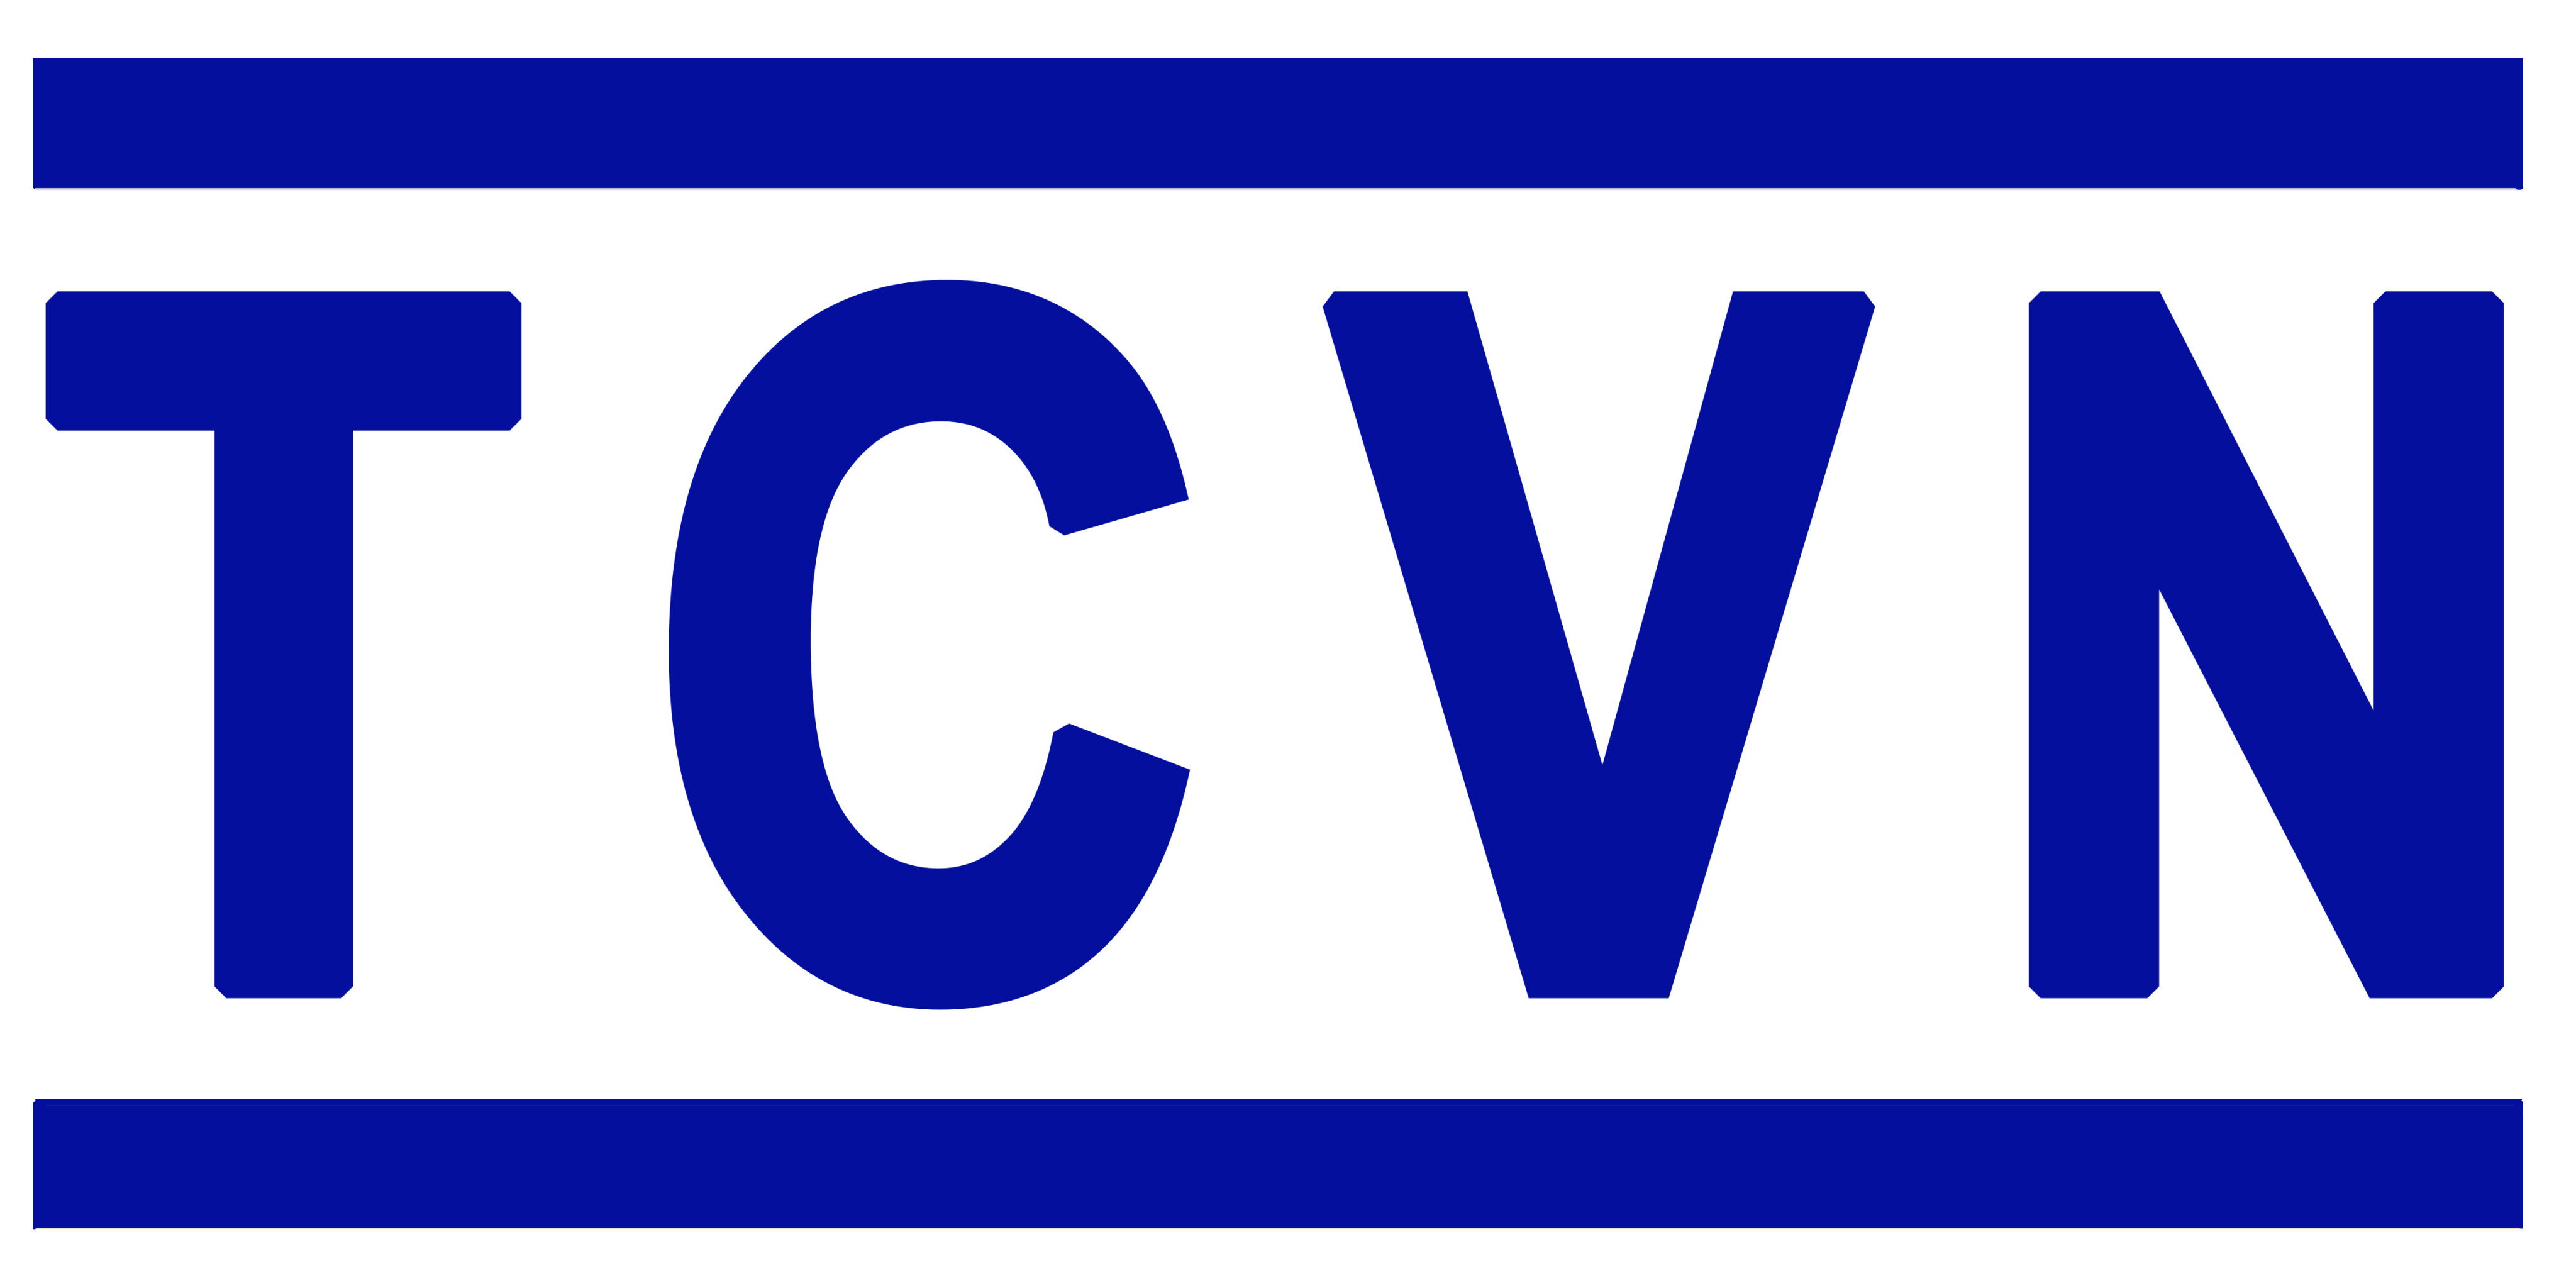 Danh mục tiêu chuẩn Quốc Gia (TCVN) công bố trong tháng 1 năm 2019